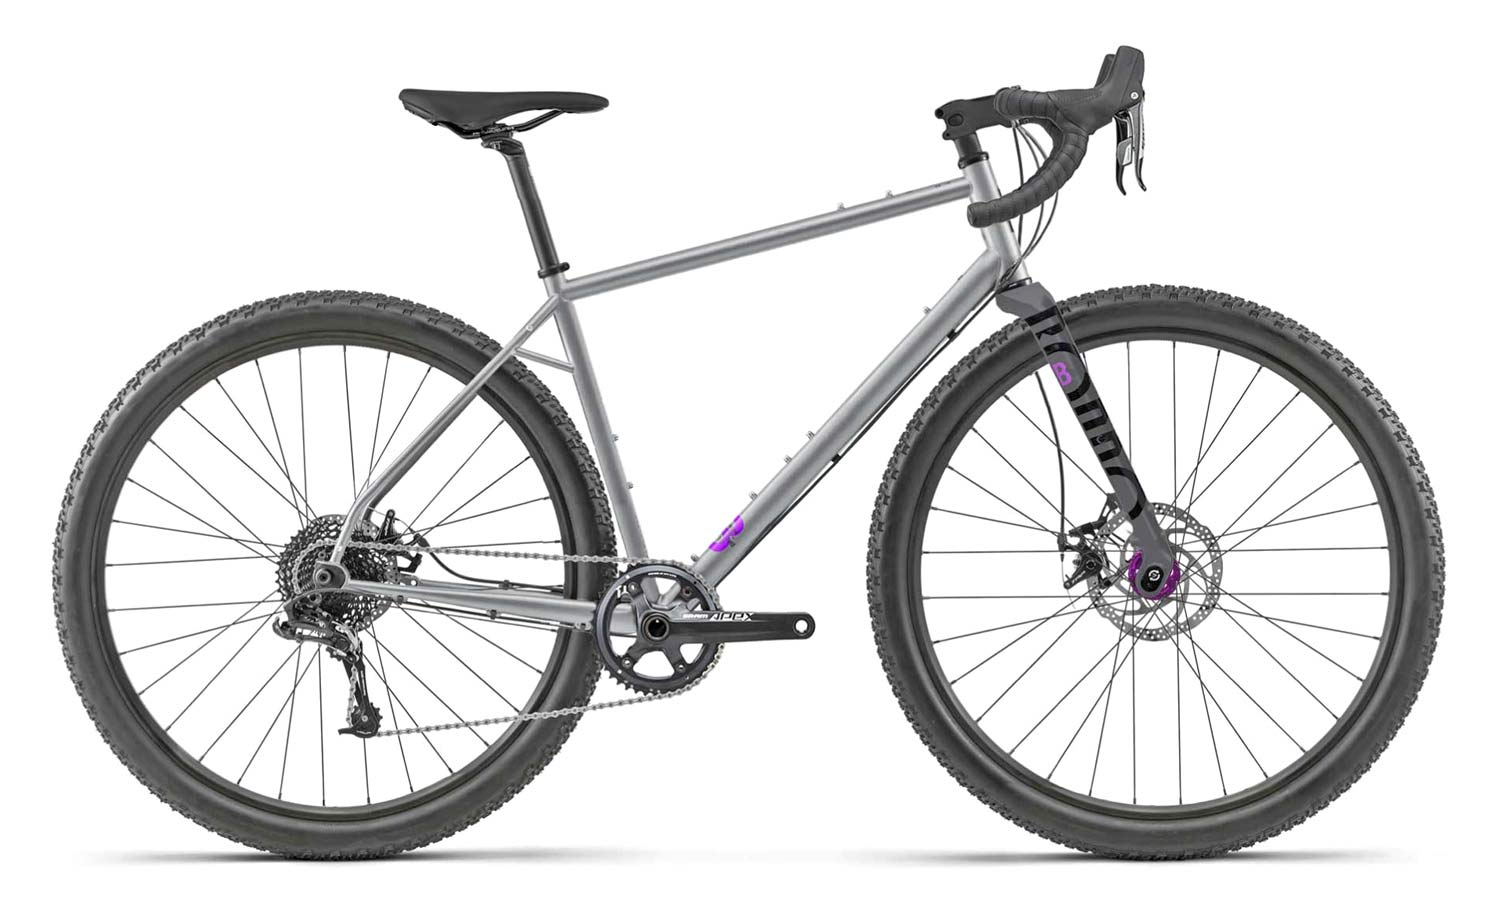 2020 Rondo Bogan steel 29er adventure gravel bike, all new Tange steel variable geometry gravel bikepacking bike